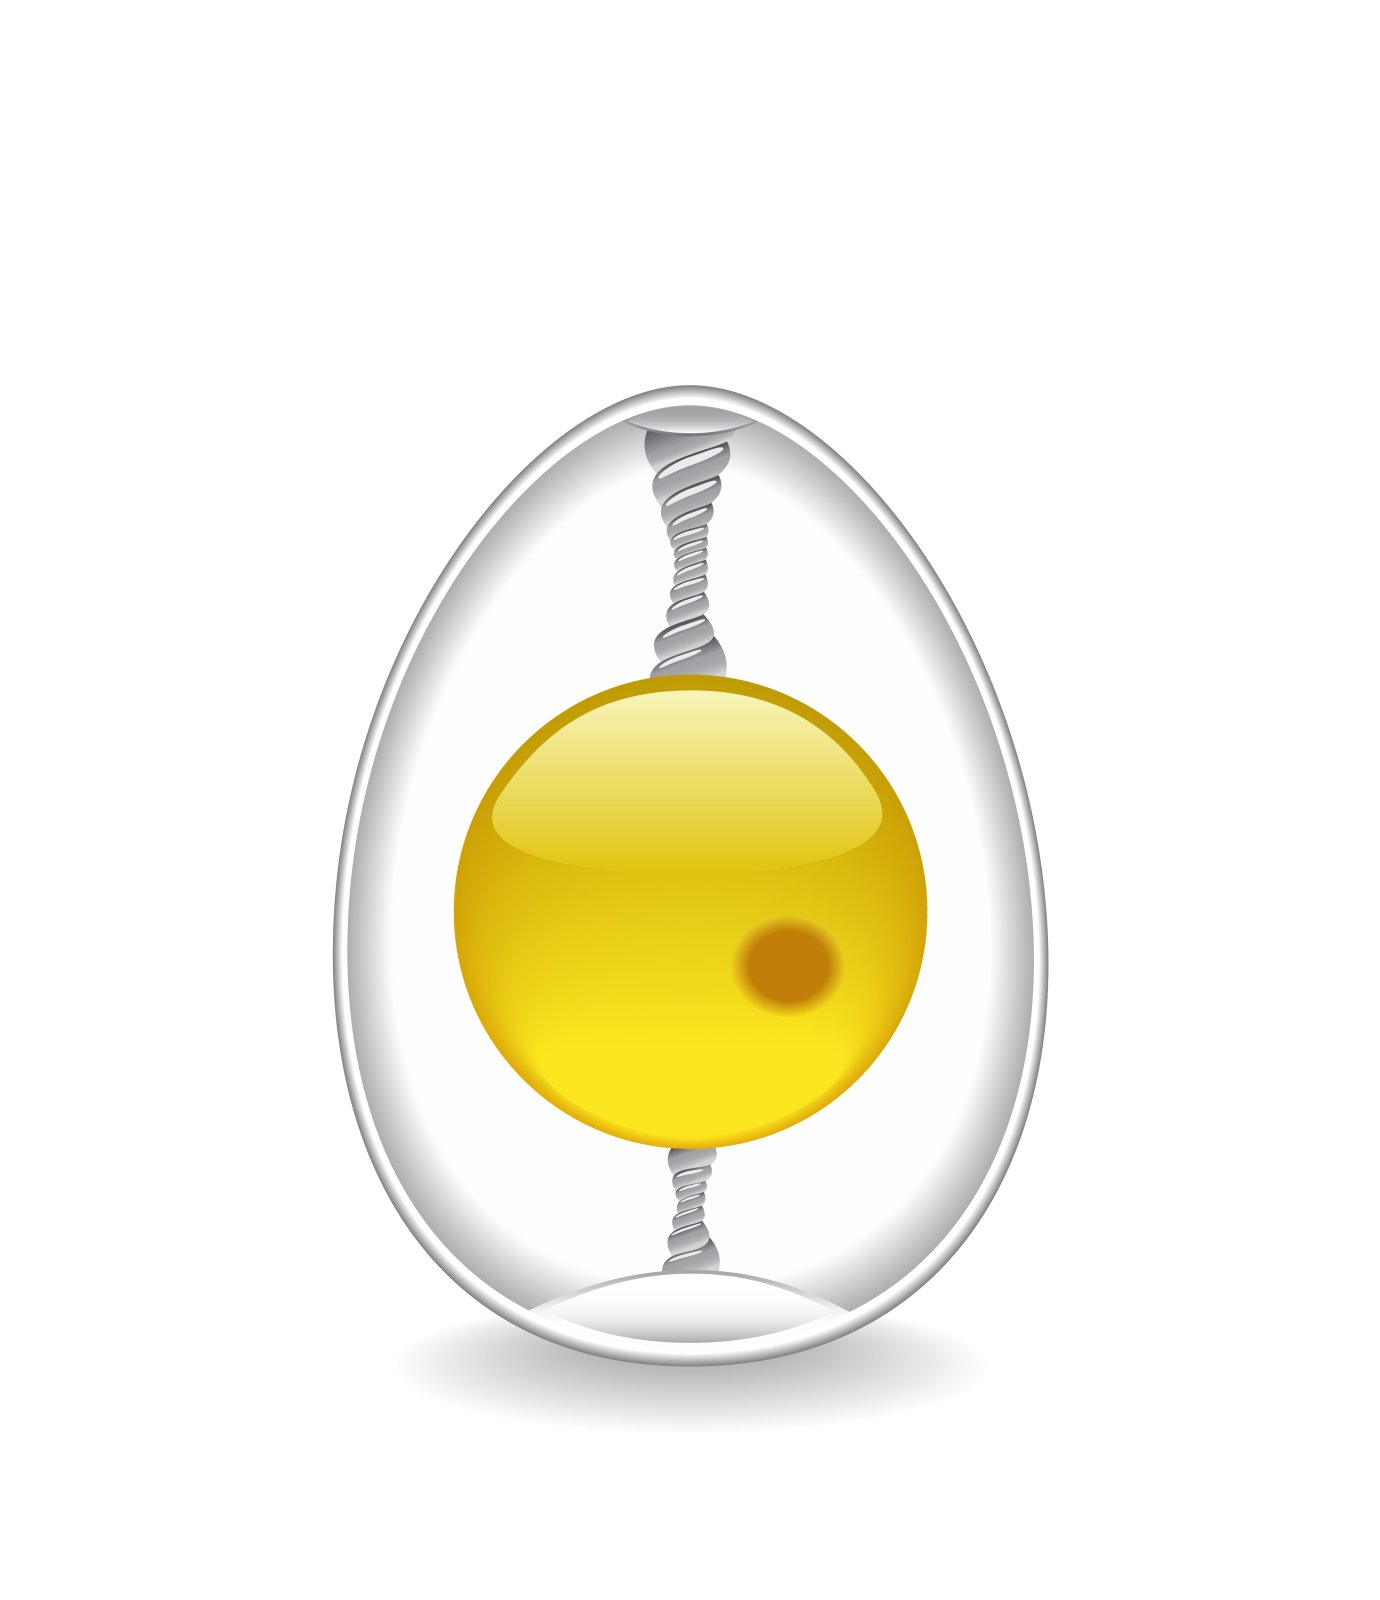 Chaláza spojující žloutek s membránou vejce – fkdkondmi / Shutterstock